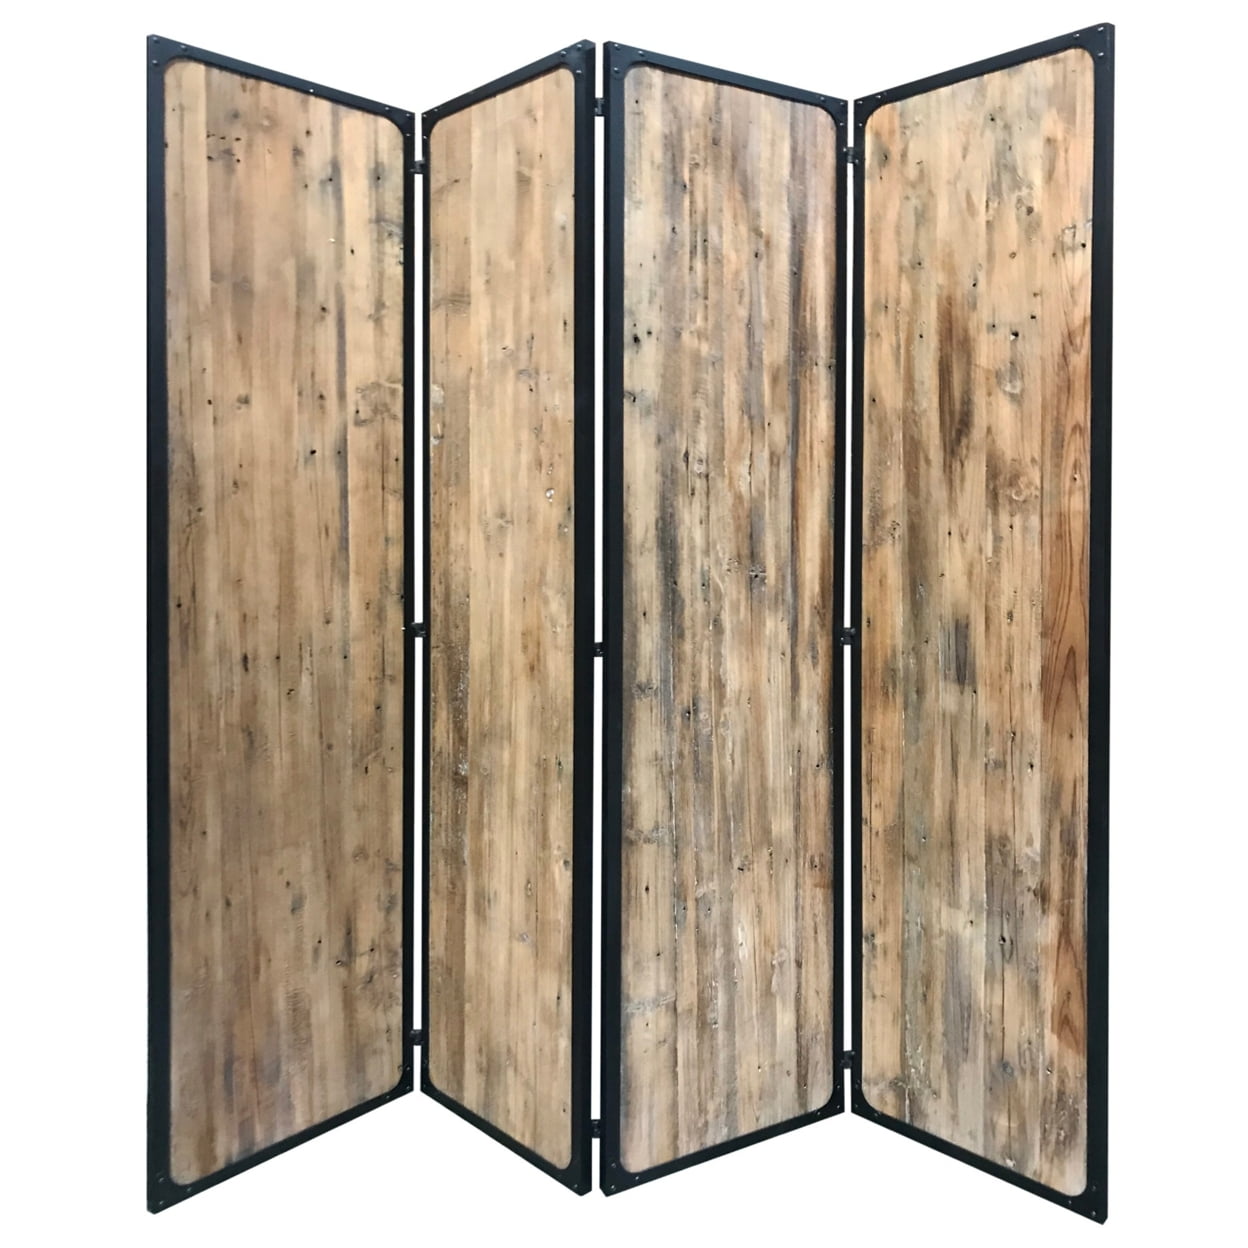 Bm231307 84 In. 4 Panel Metal Frame Room Divider, Black & Brown